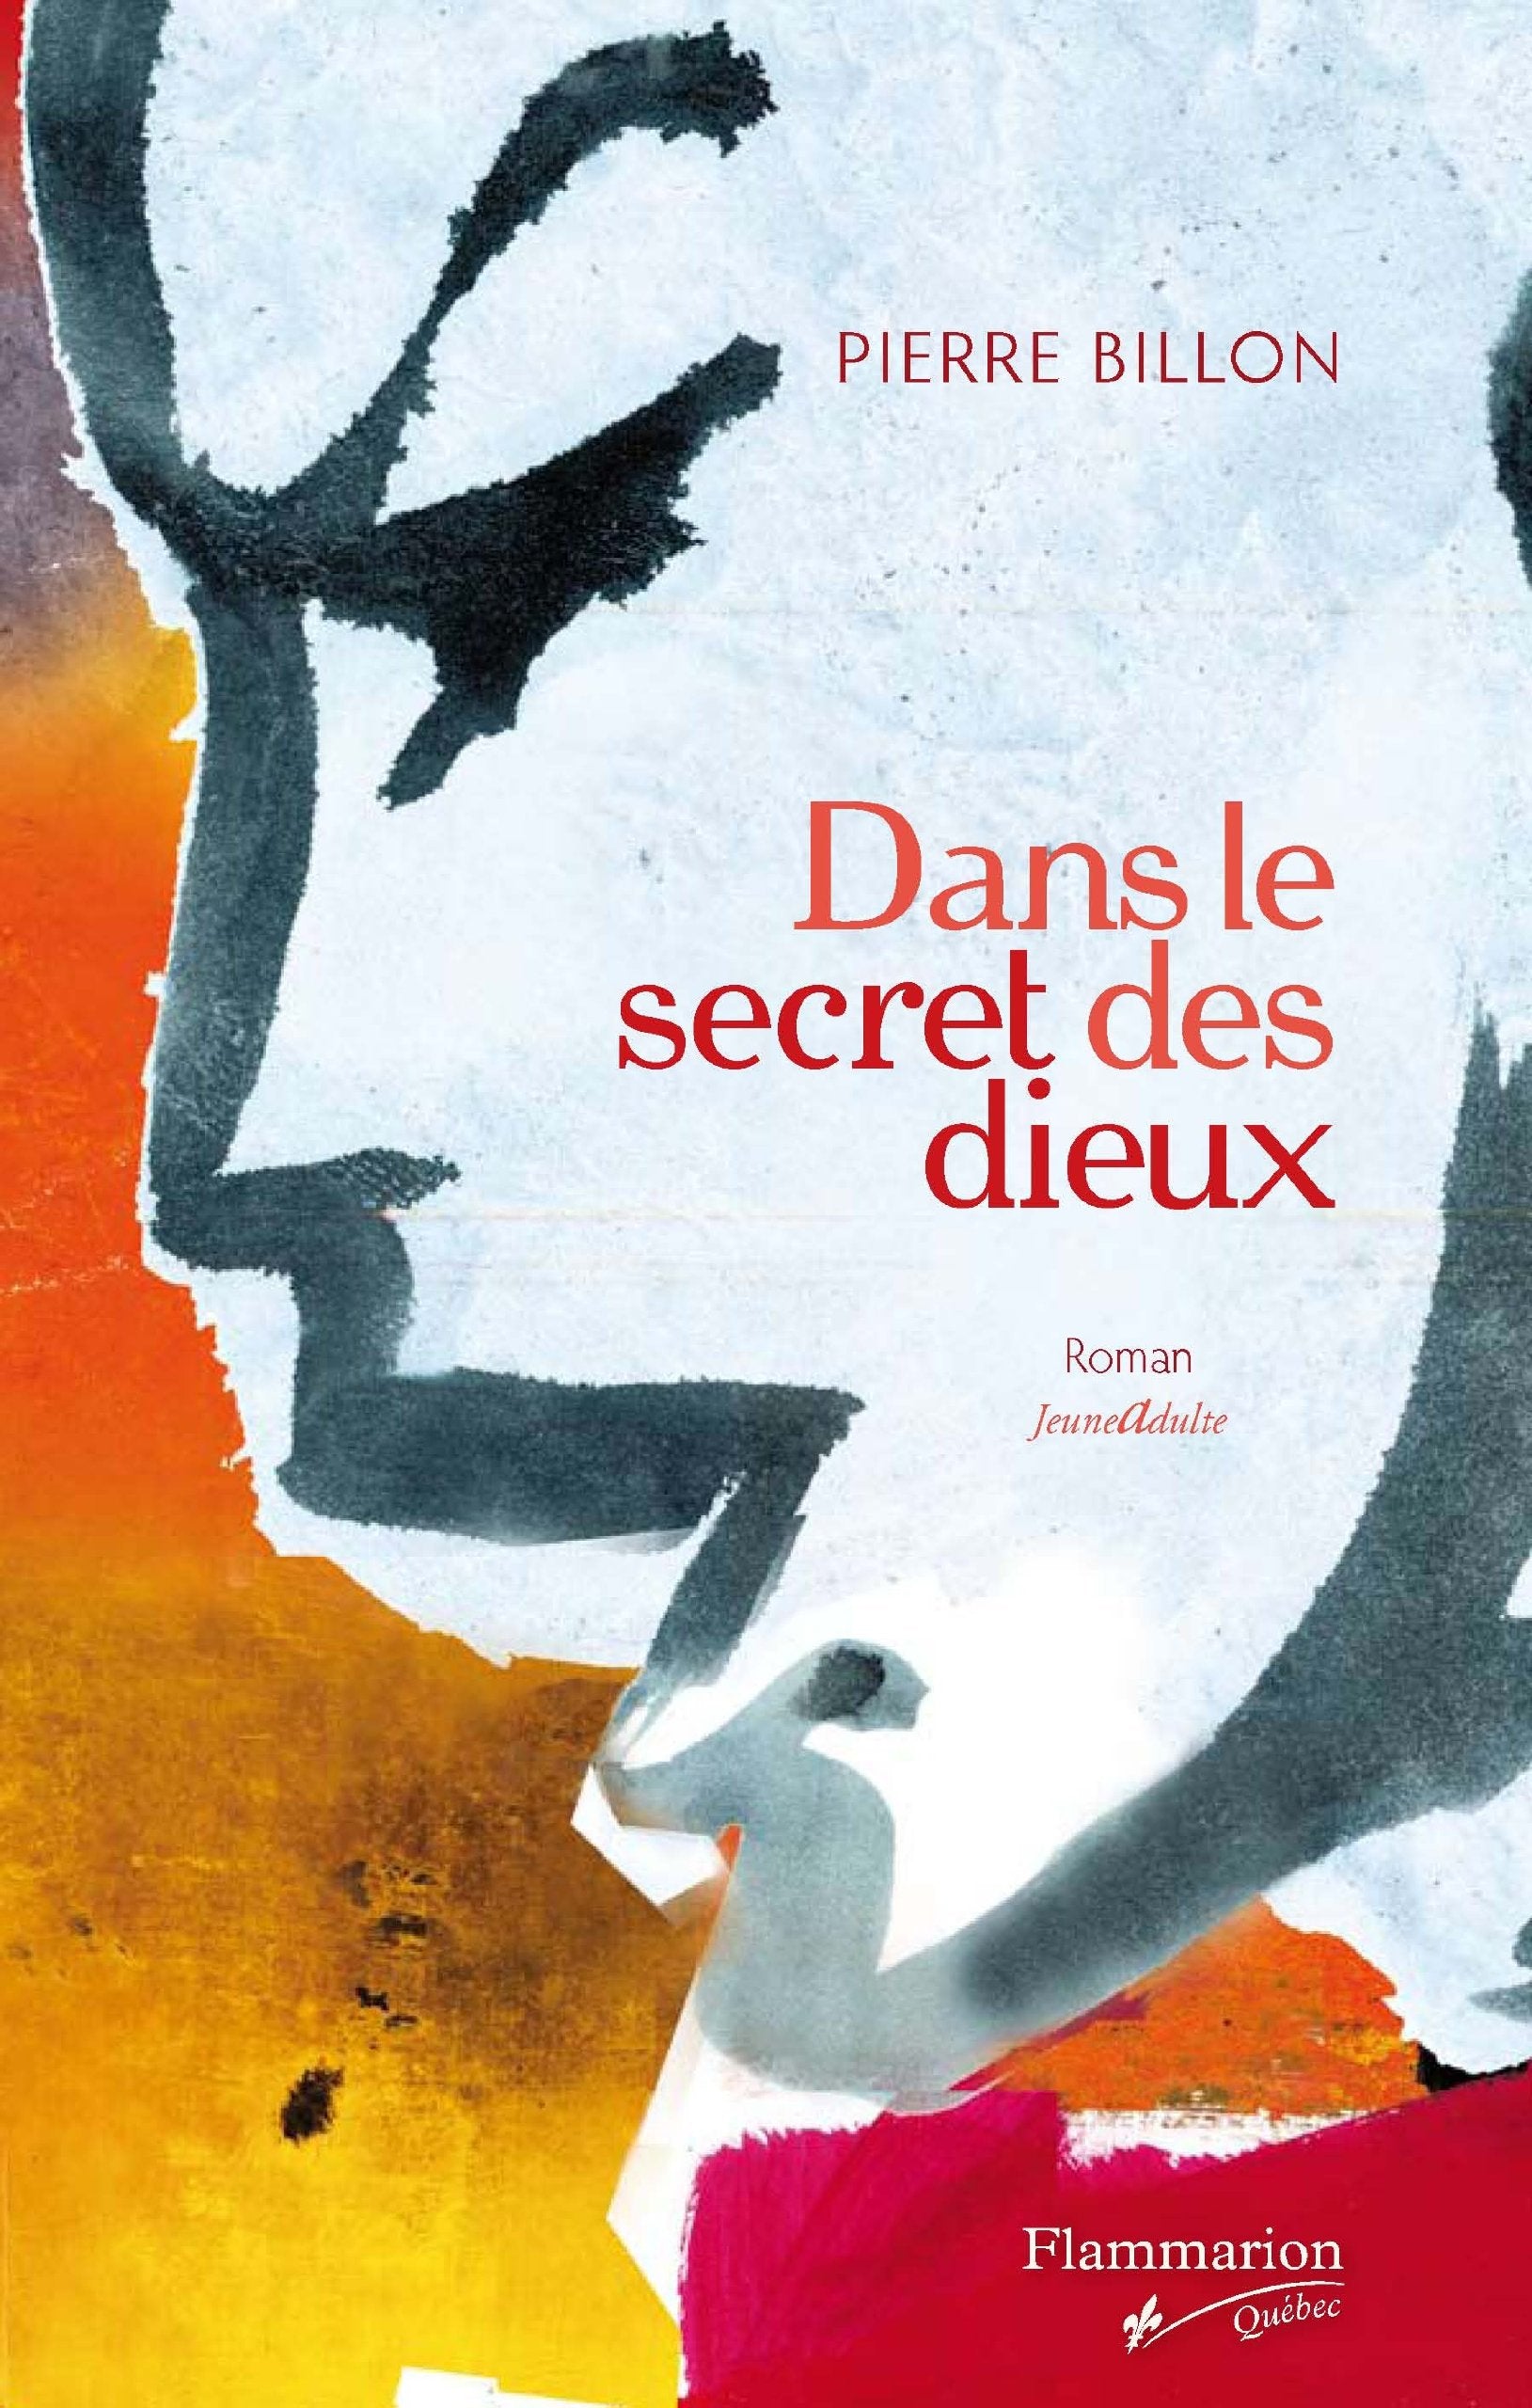 Livre ISBN 2890773523 Dans le secret des dieux (Pierre Billon)